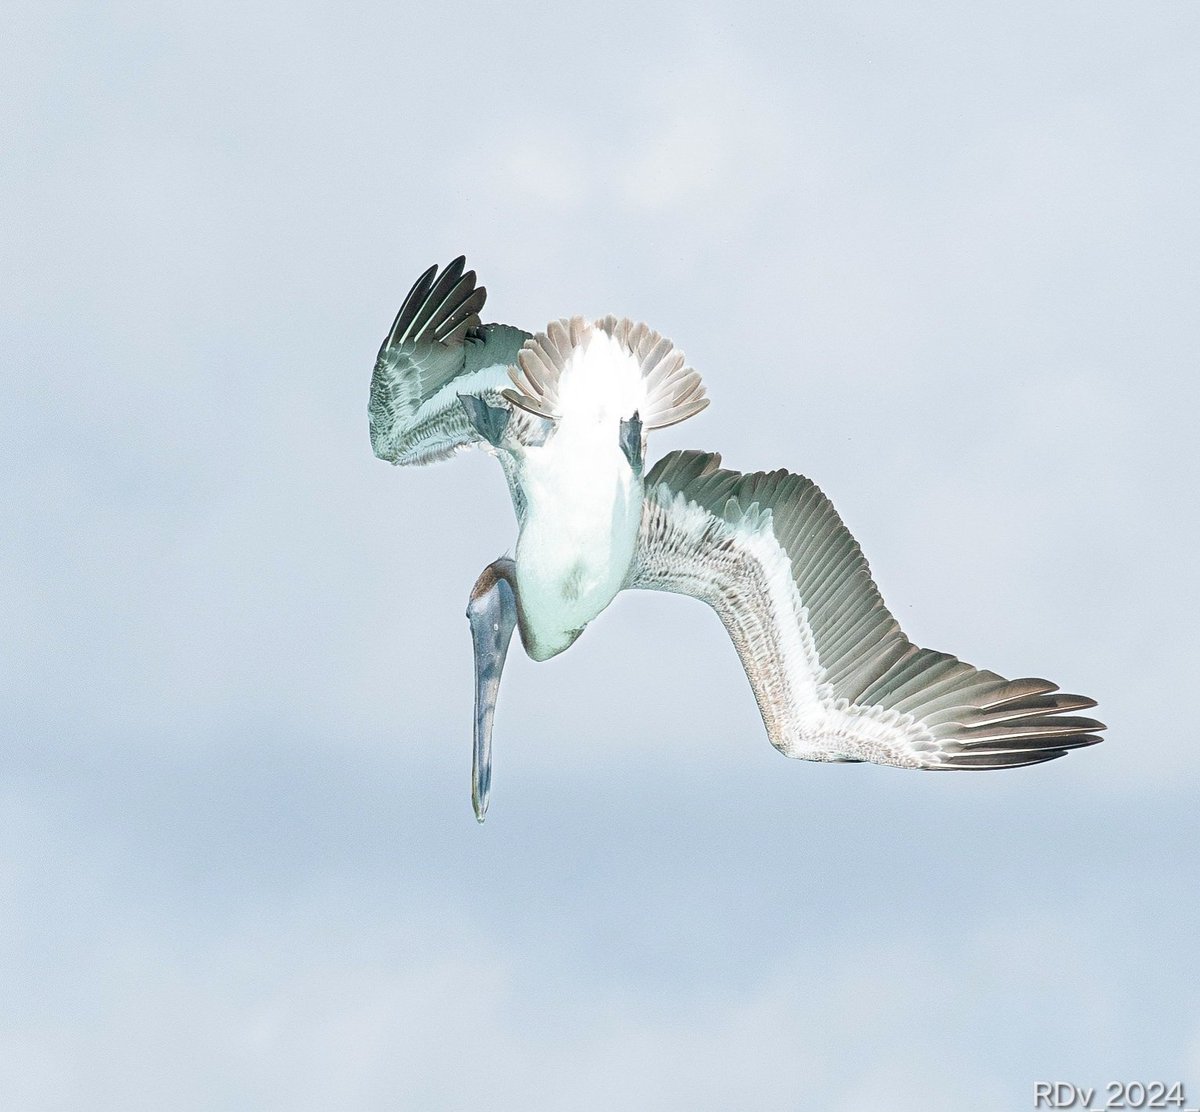 The dive #pelican #dive #birdinflight #birdphotography #birding #birdwatching #BirdsOfTwitter #Florida #wildlife #nature